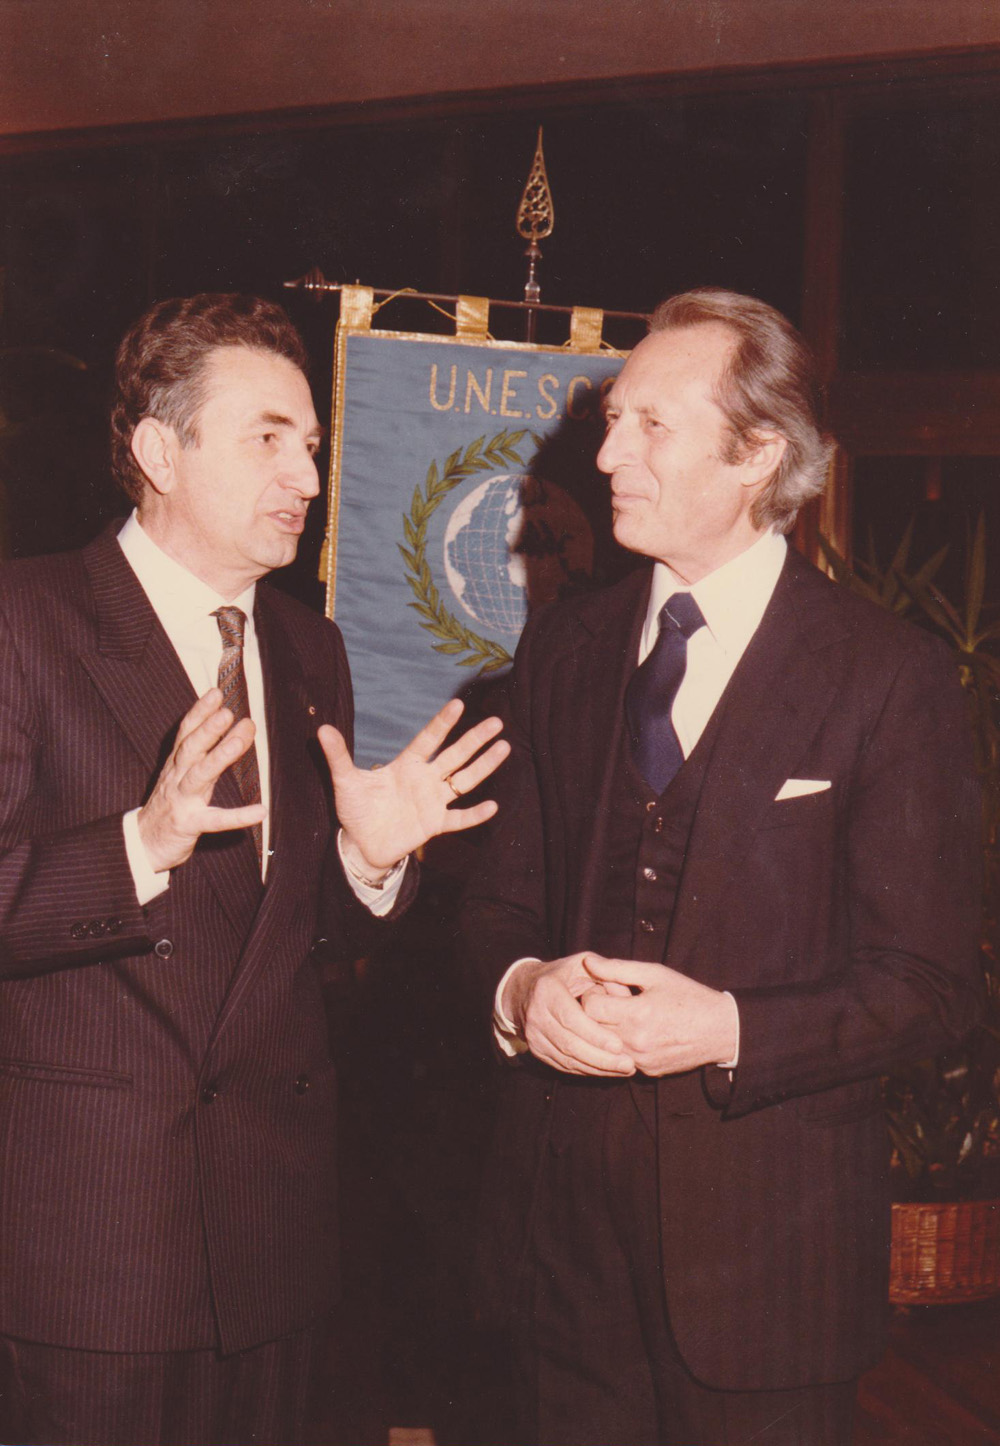 Meeting con Direttore D'orchestra Maestro Giulini. 1985 @ Club per l'Unesco Barletta